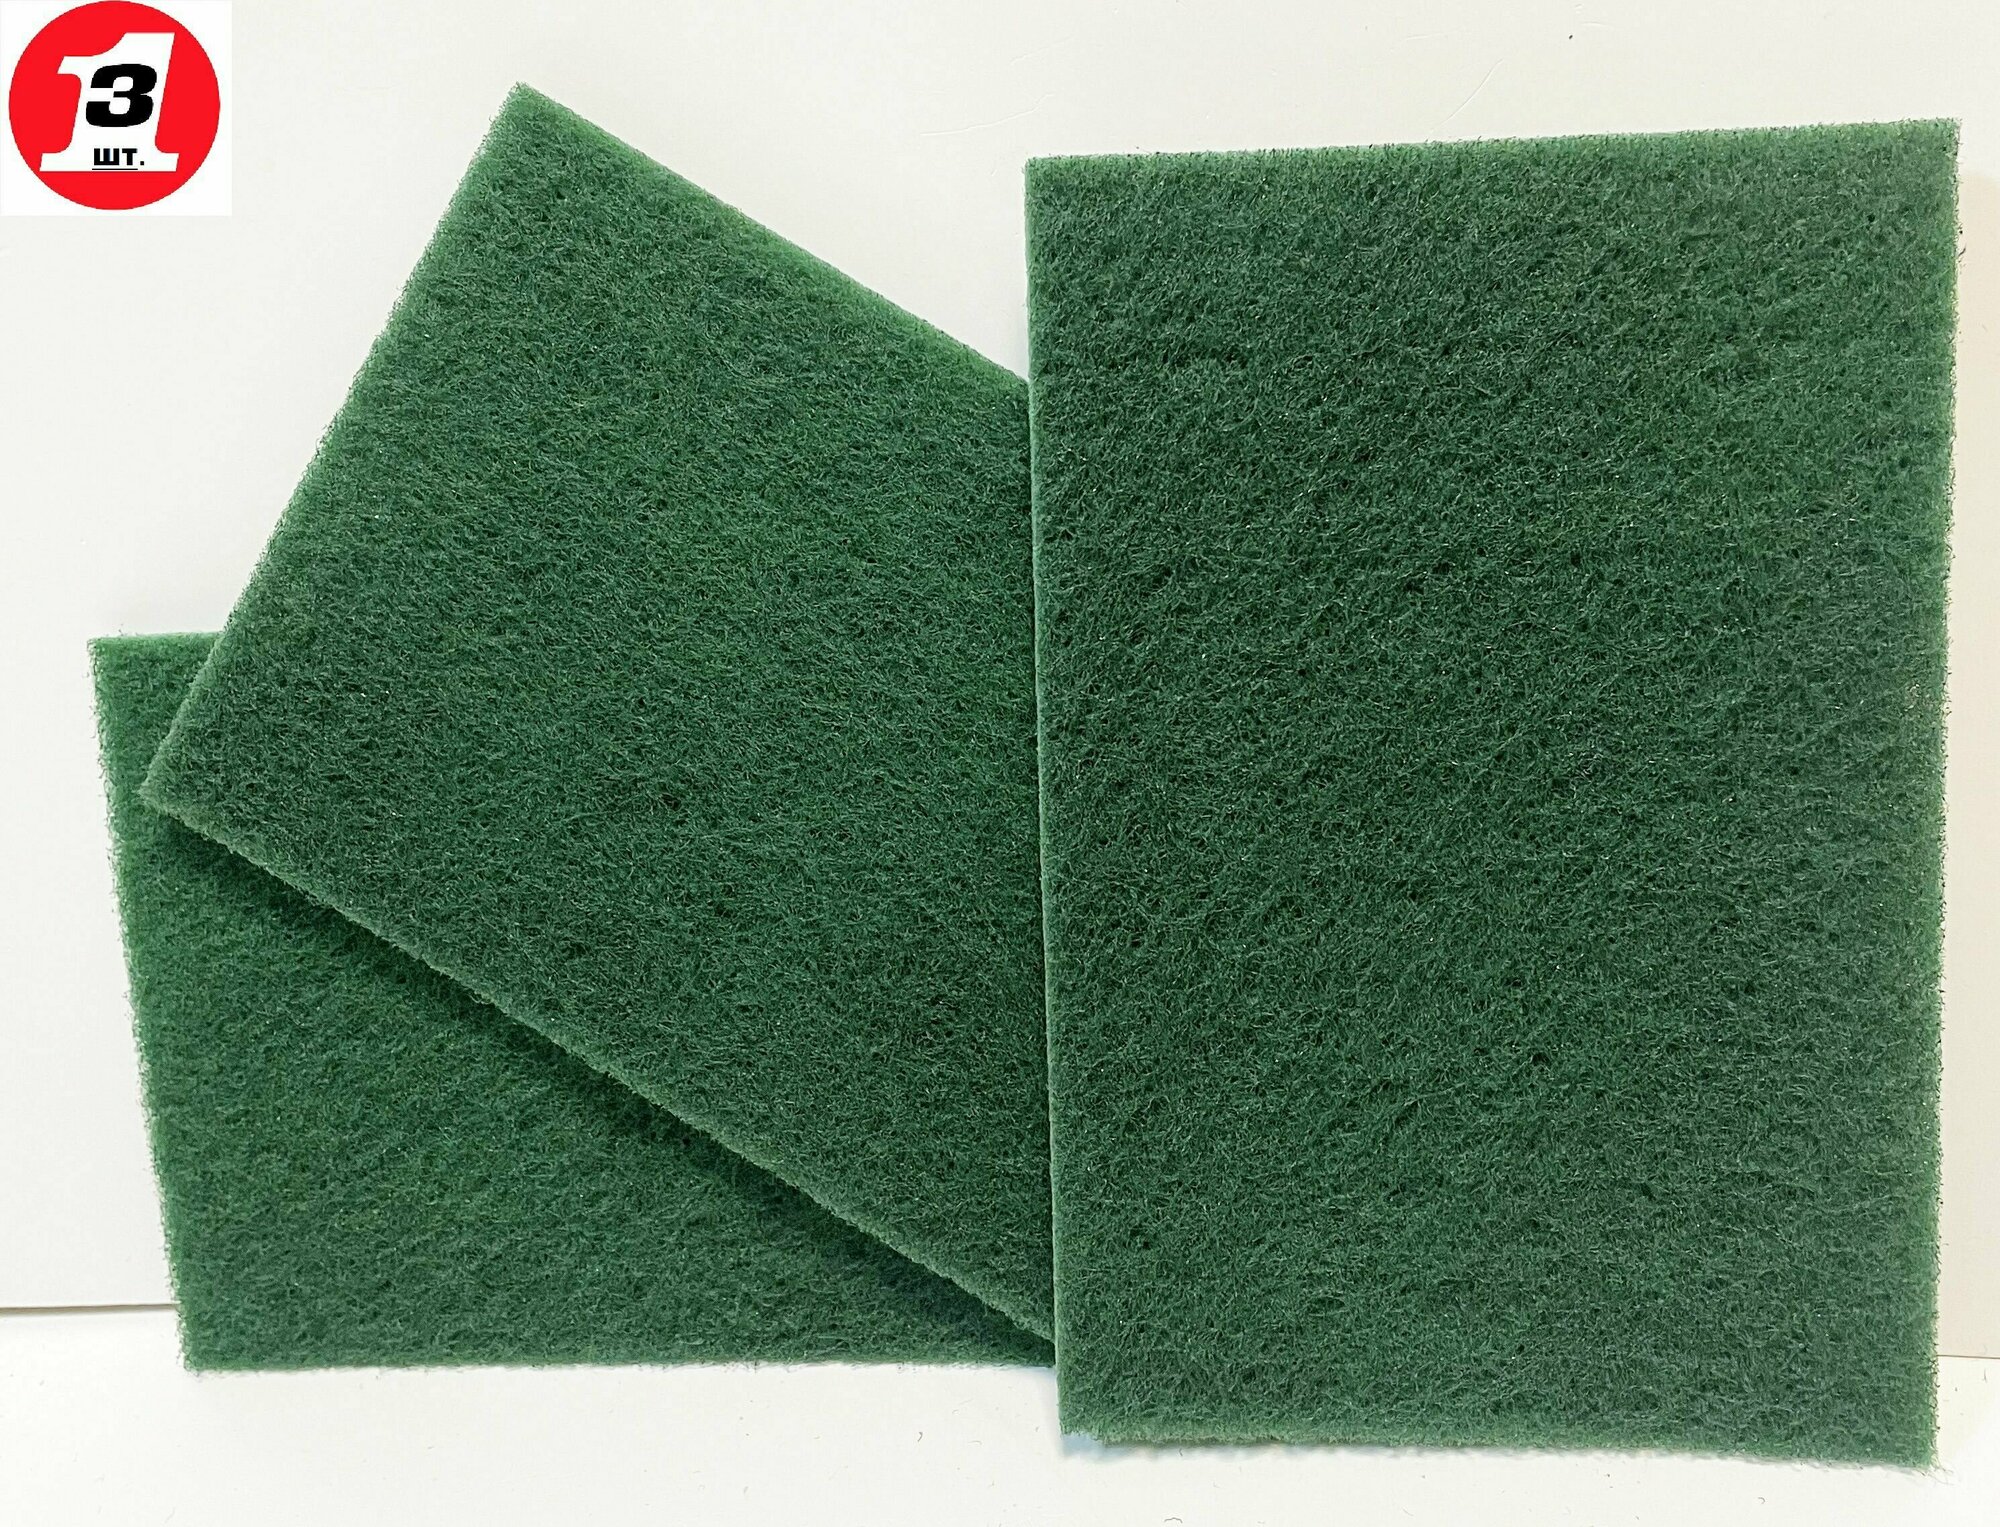 Лист шлифовальный RoxelPro скотч-брайт 152х229мм войлок шлифовальный FINE р-320 зеленый комплект-3шт.